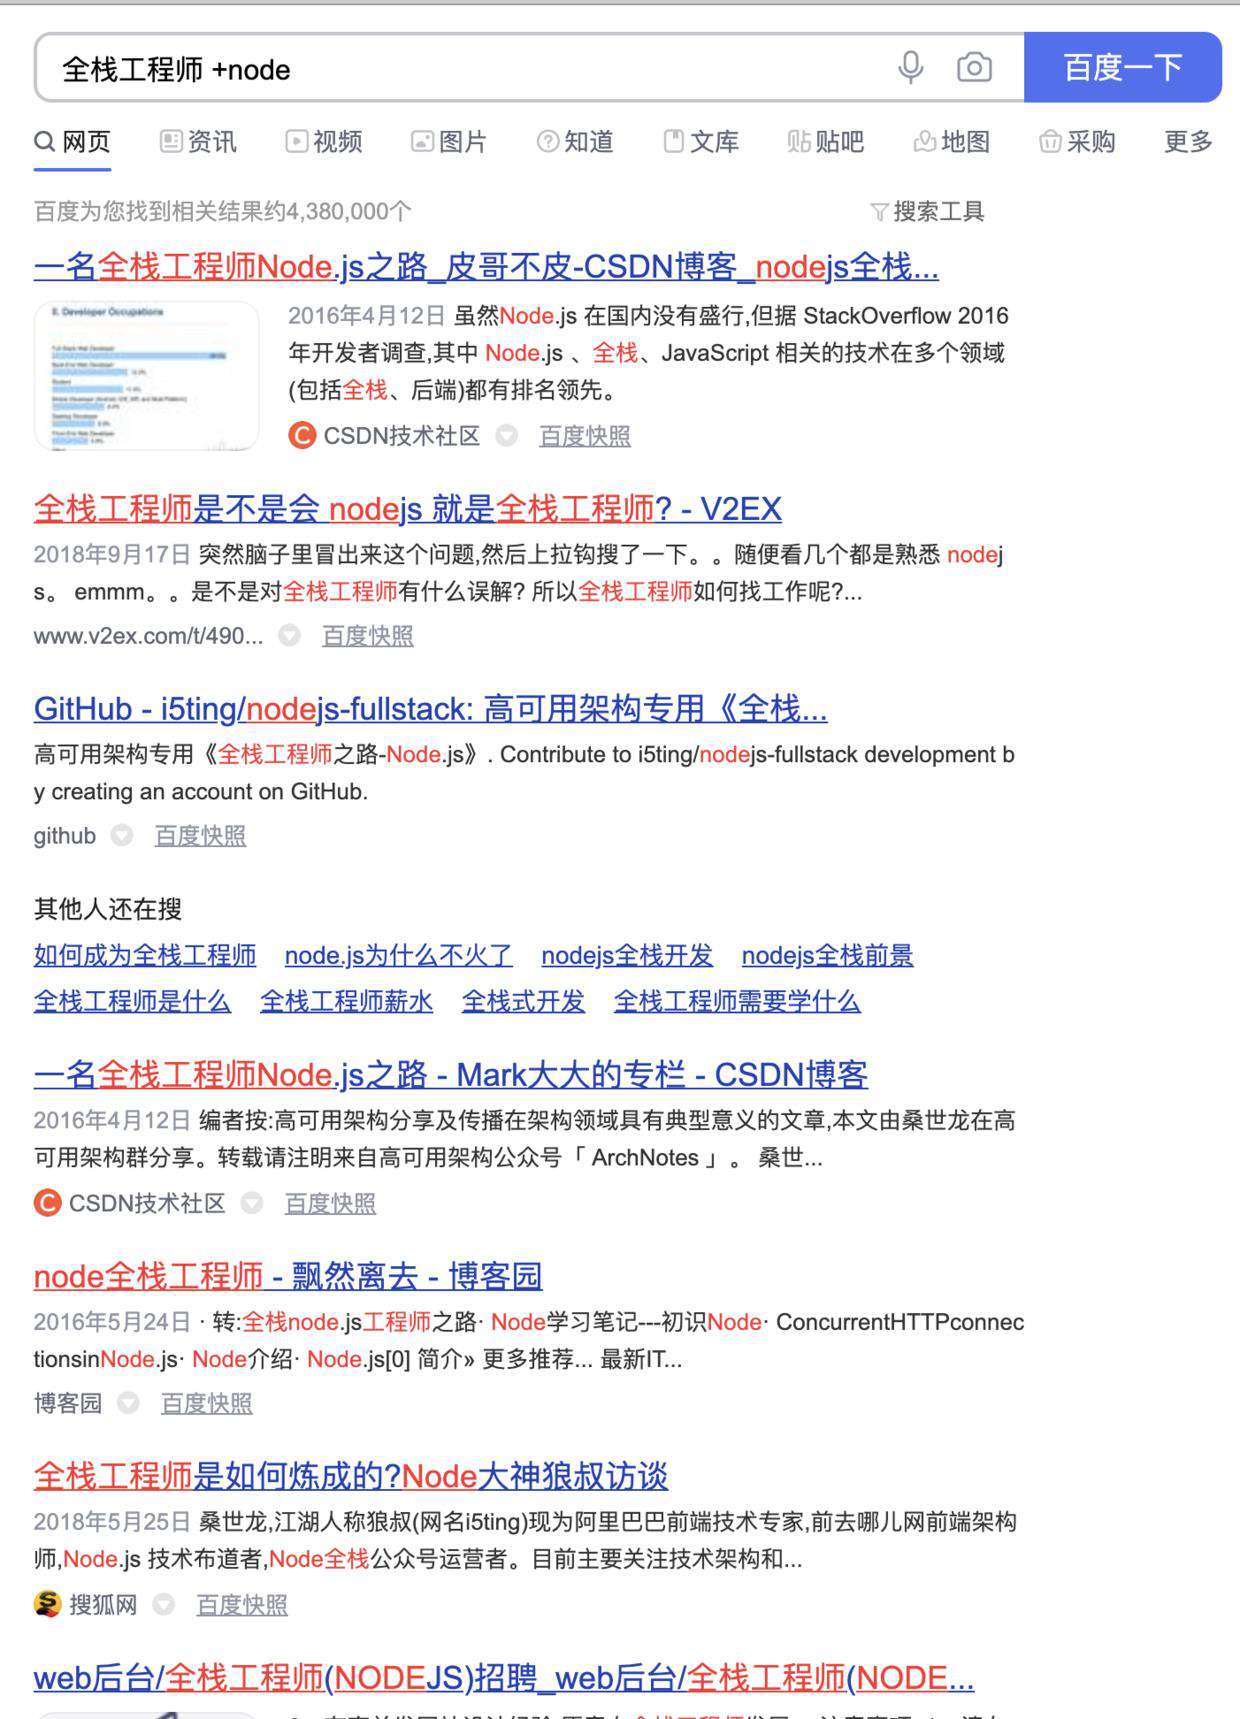 自从掌握了 Google 和 Baidu 的 16 个高级搜索技巧，我再也没有解决不了的 bug 了